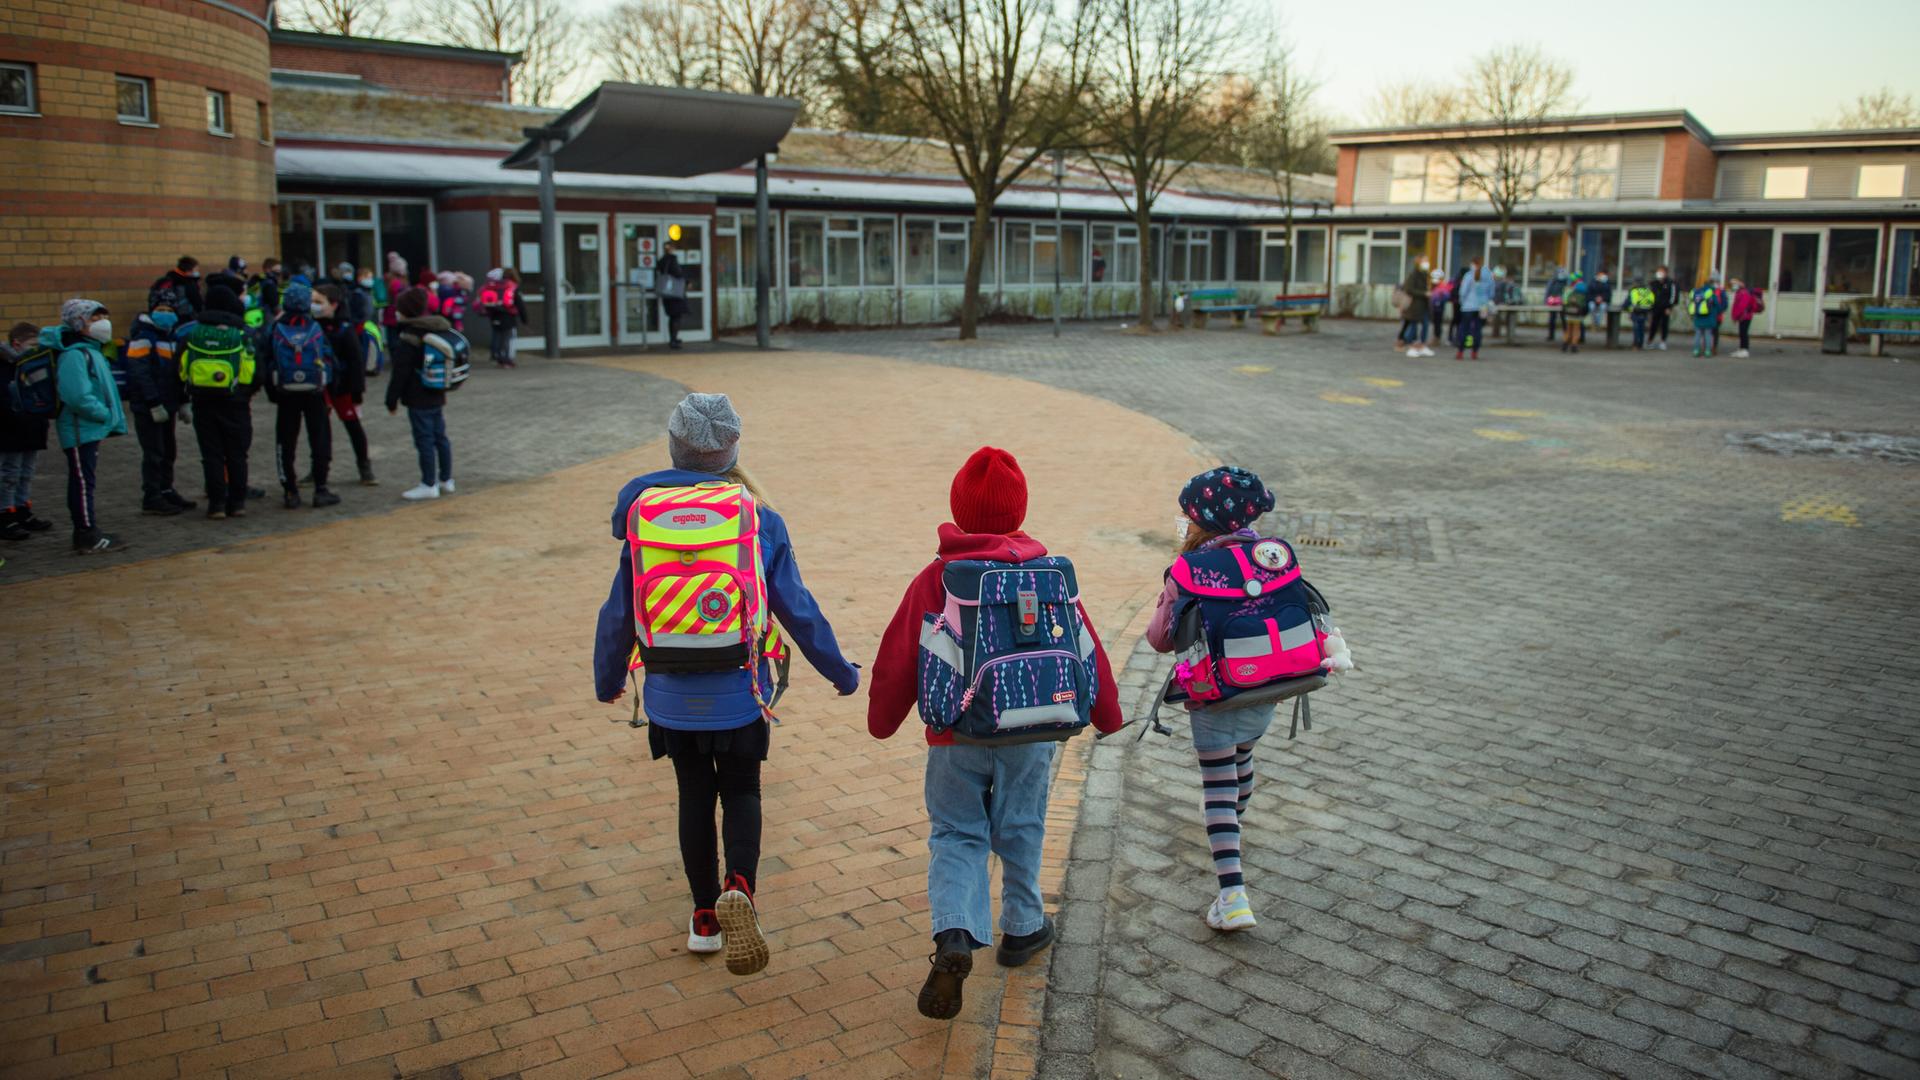 Schulkinder auf einem Schulhof einer Grundschule in Kiel

